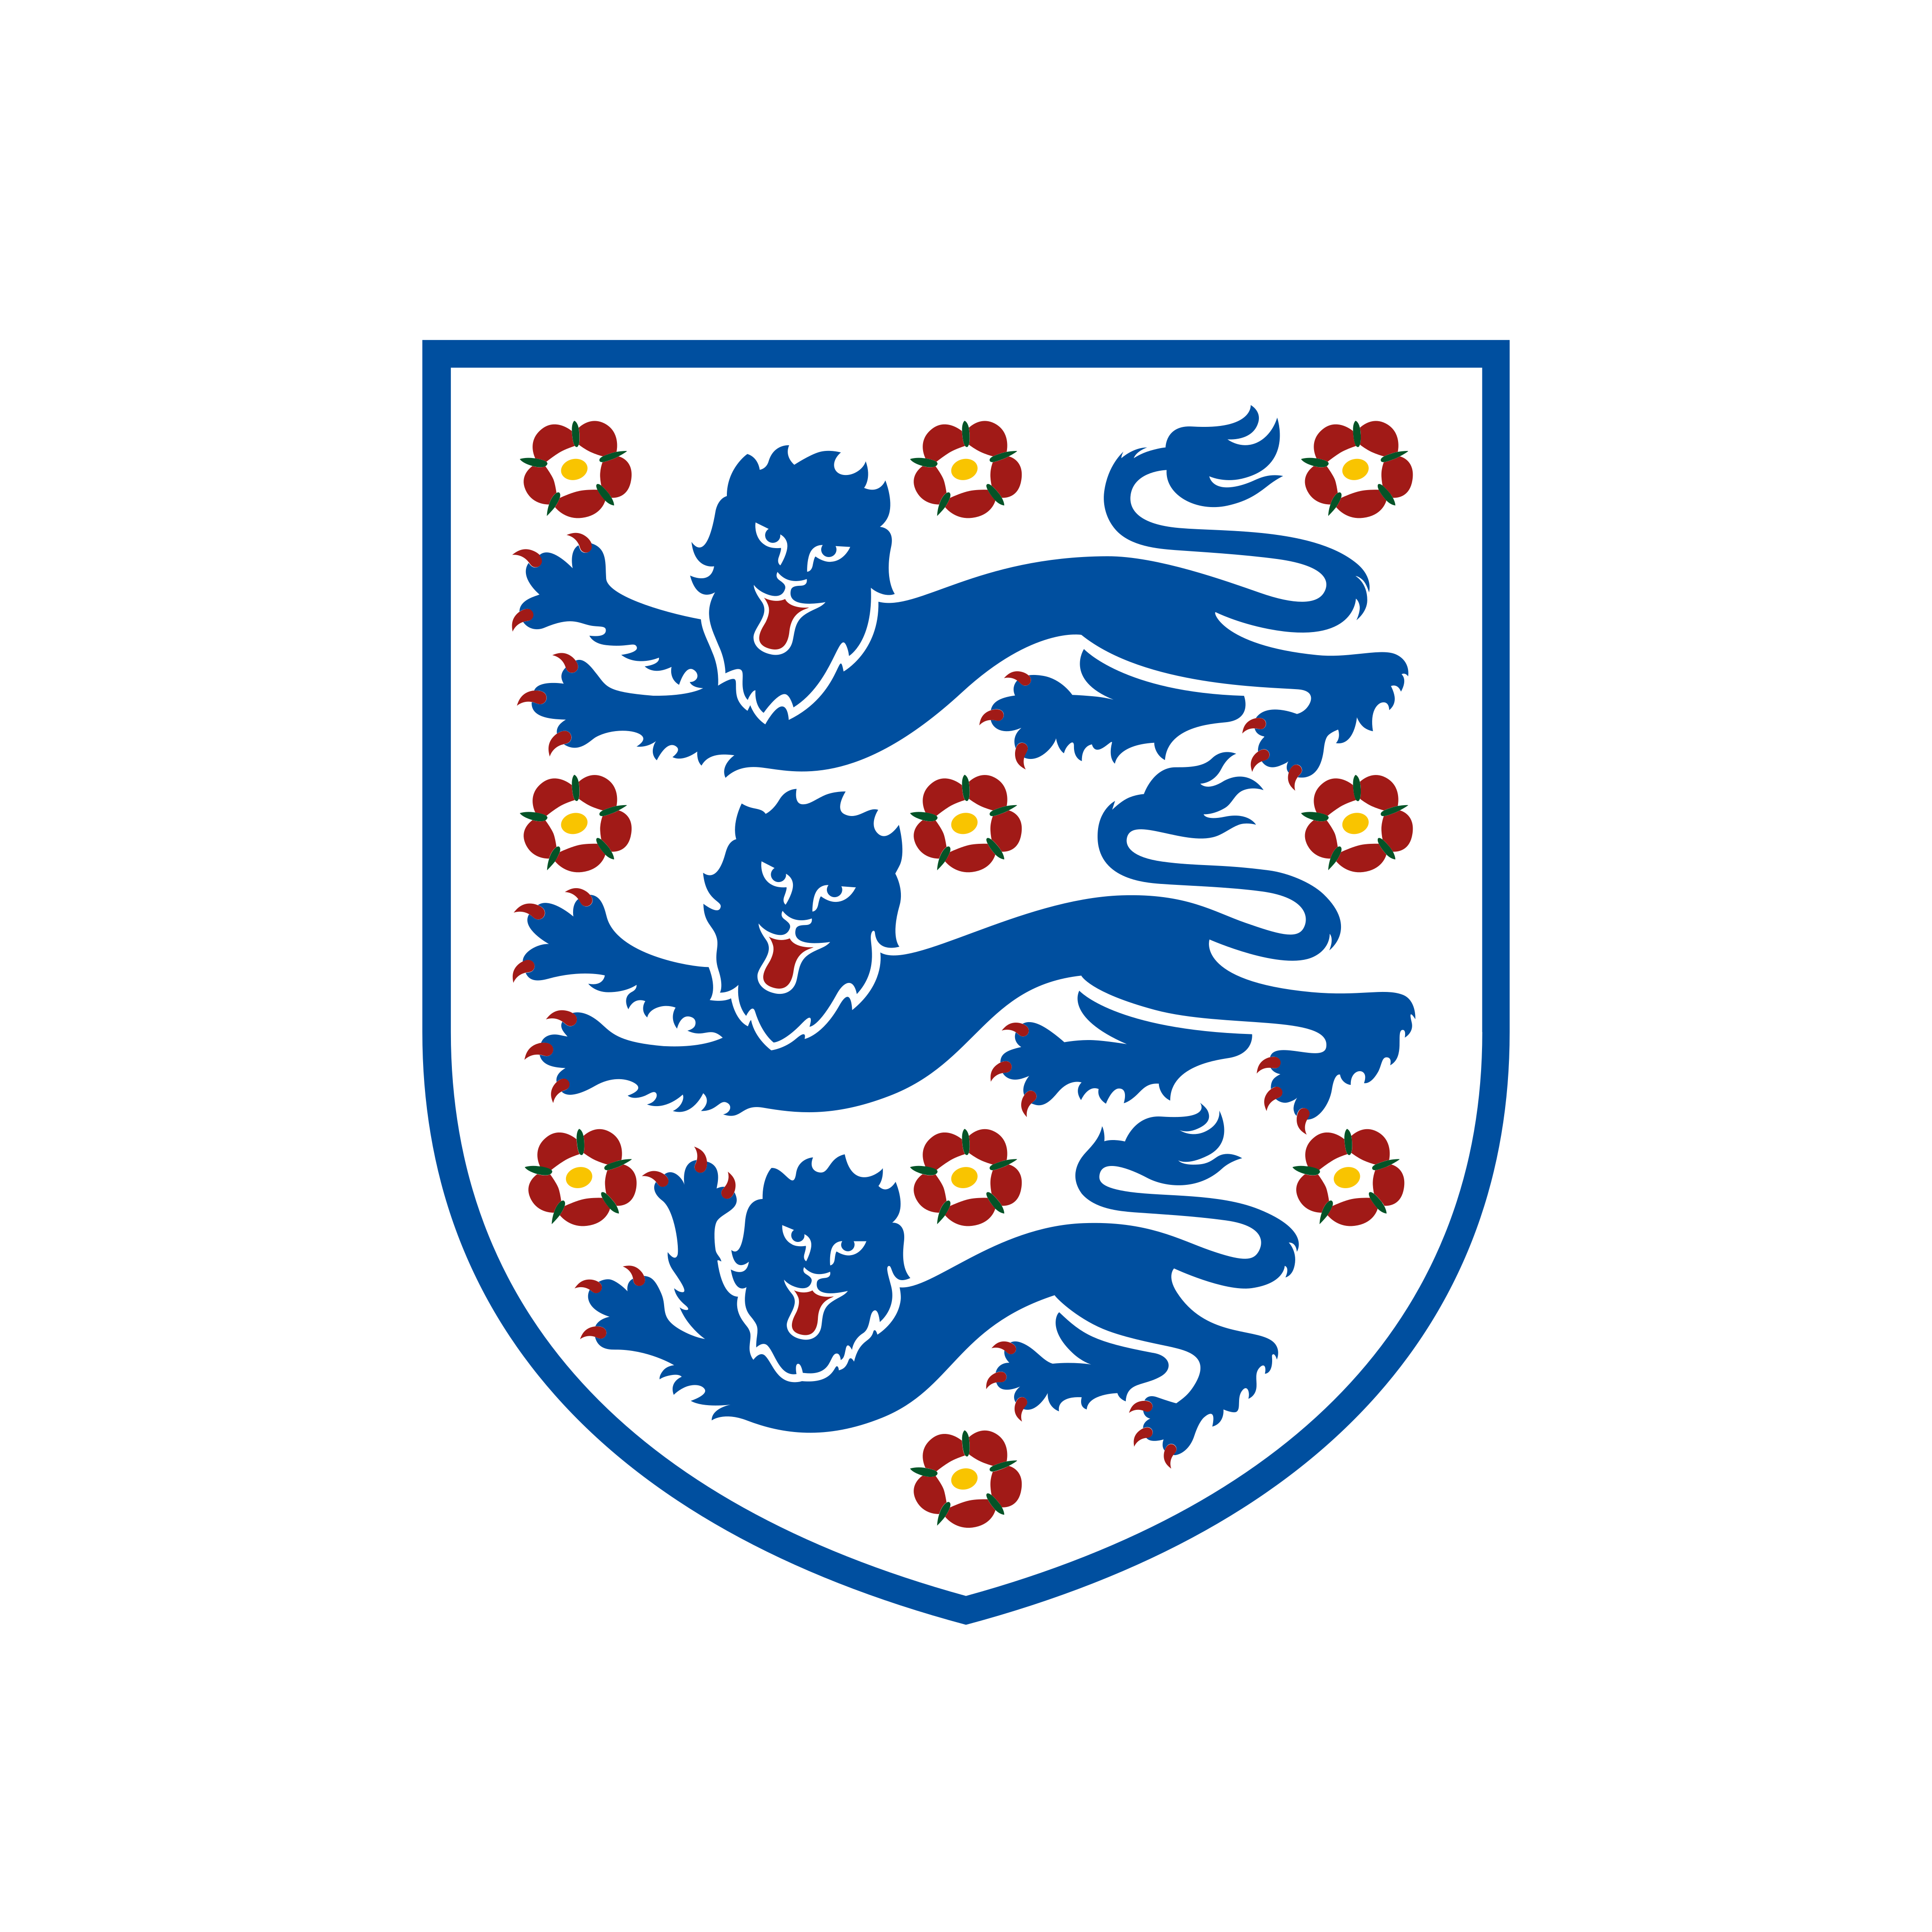 england national team logo 0 - England National Football Team Logo